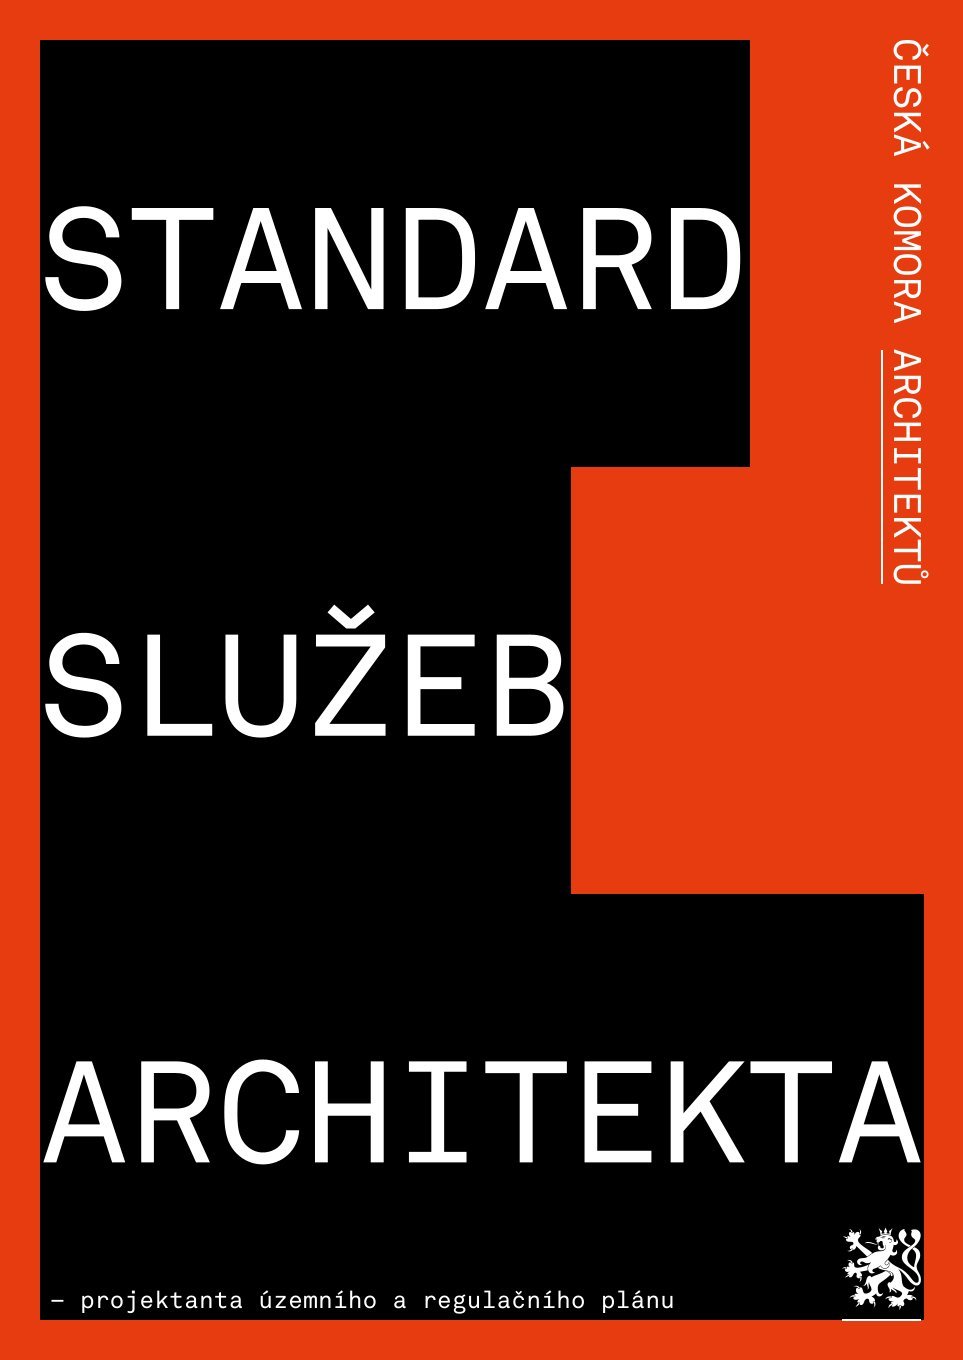 Standard služeb architekta - projektanta územního a regulačního plánu